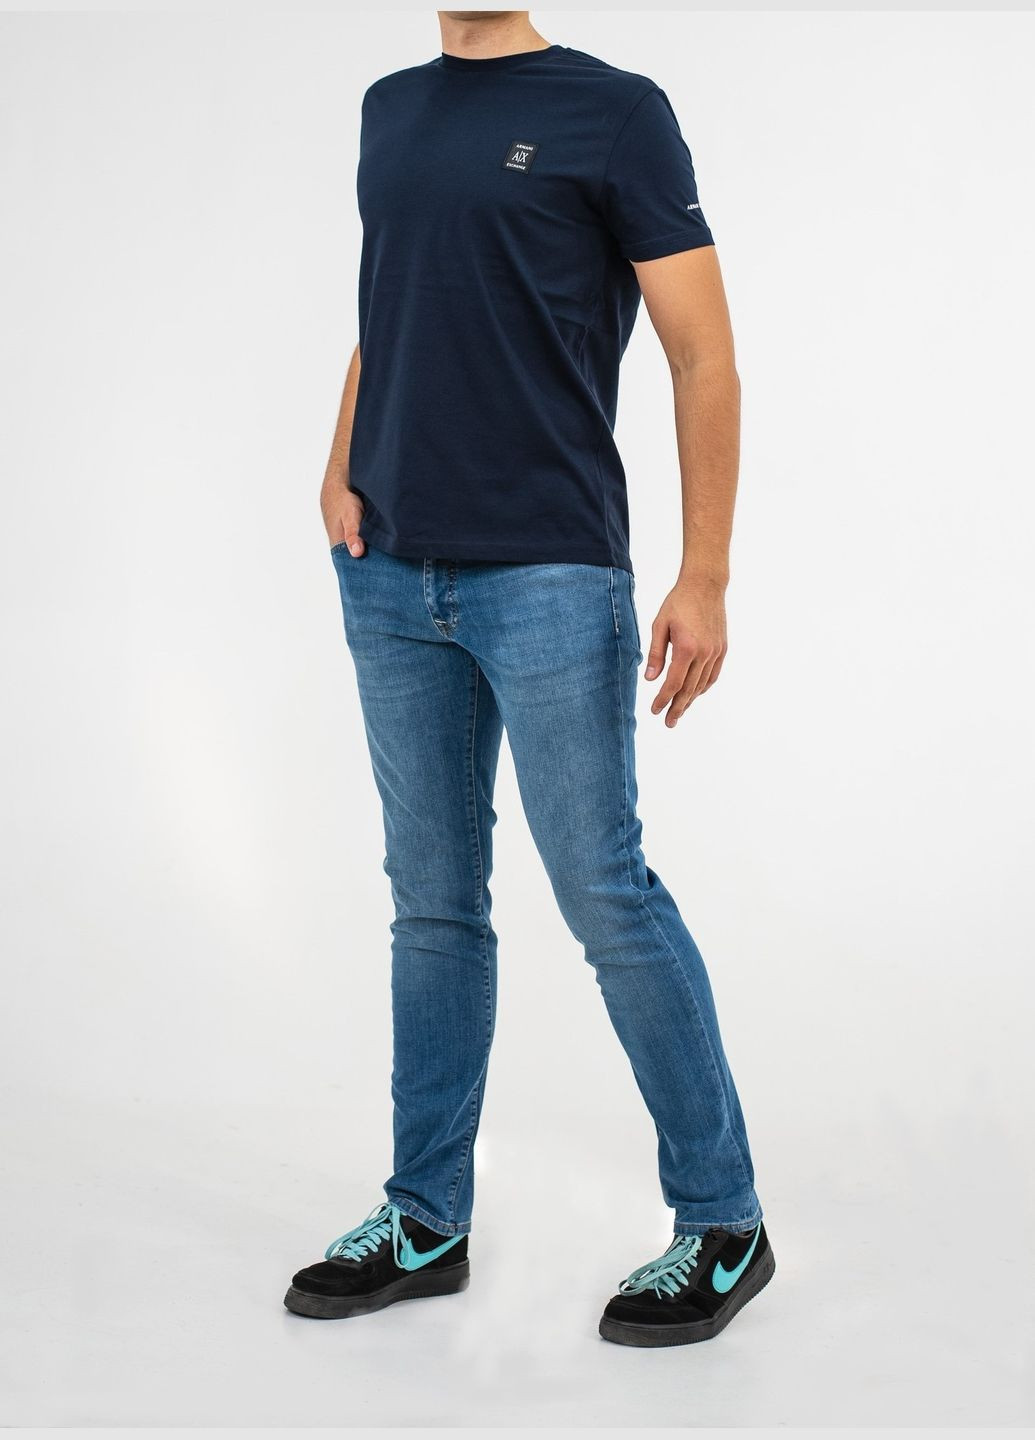 Темно-синяя футболка мужская с коротким рукавом Armani Exchange ICON PERIOD